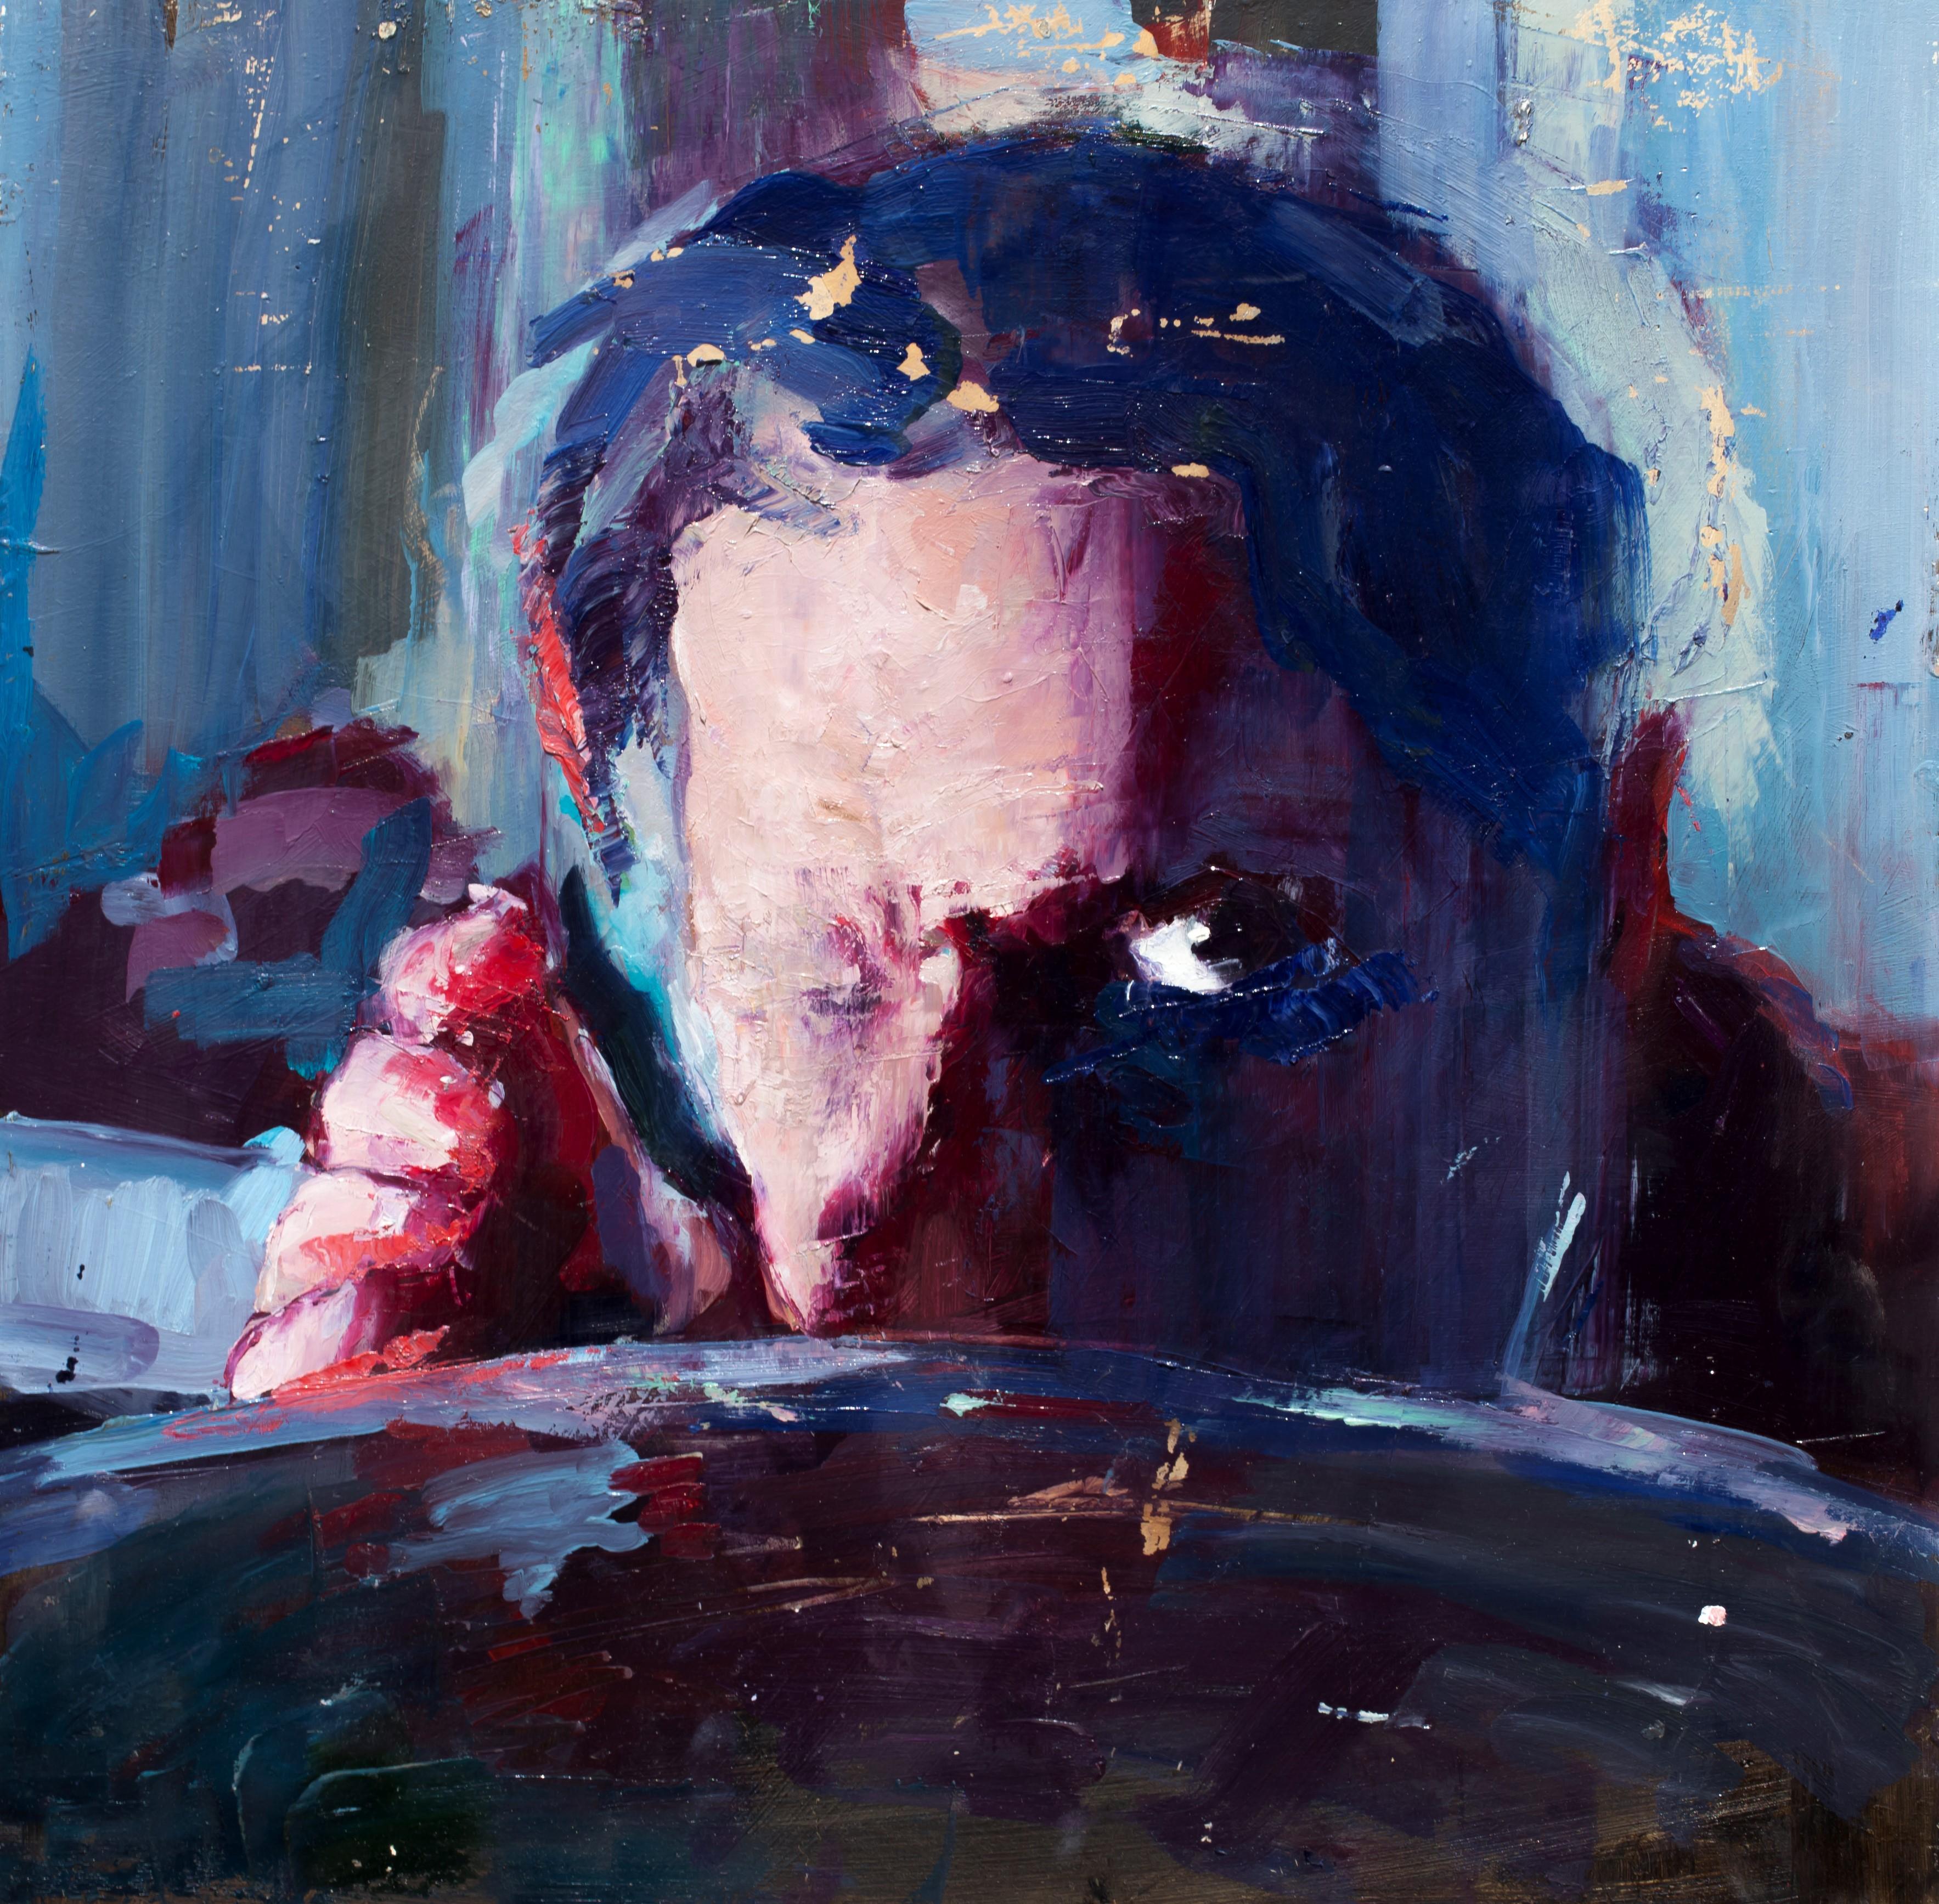 Rabid – von dem Film inspirierte männliche Figur mit einem Auge, Ölgemälde auf Tafel